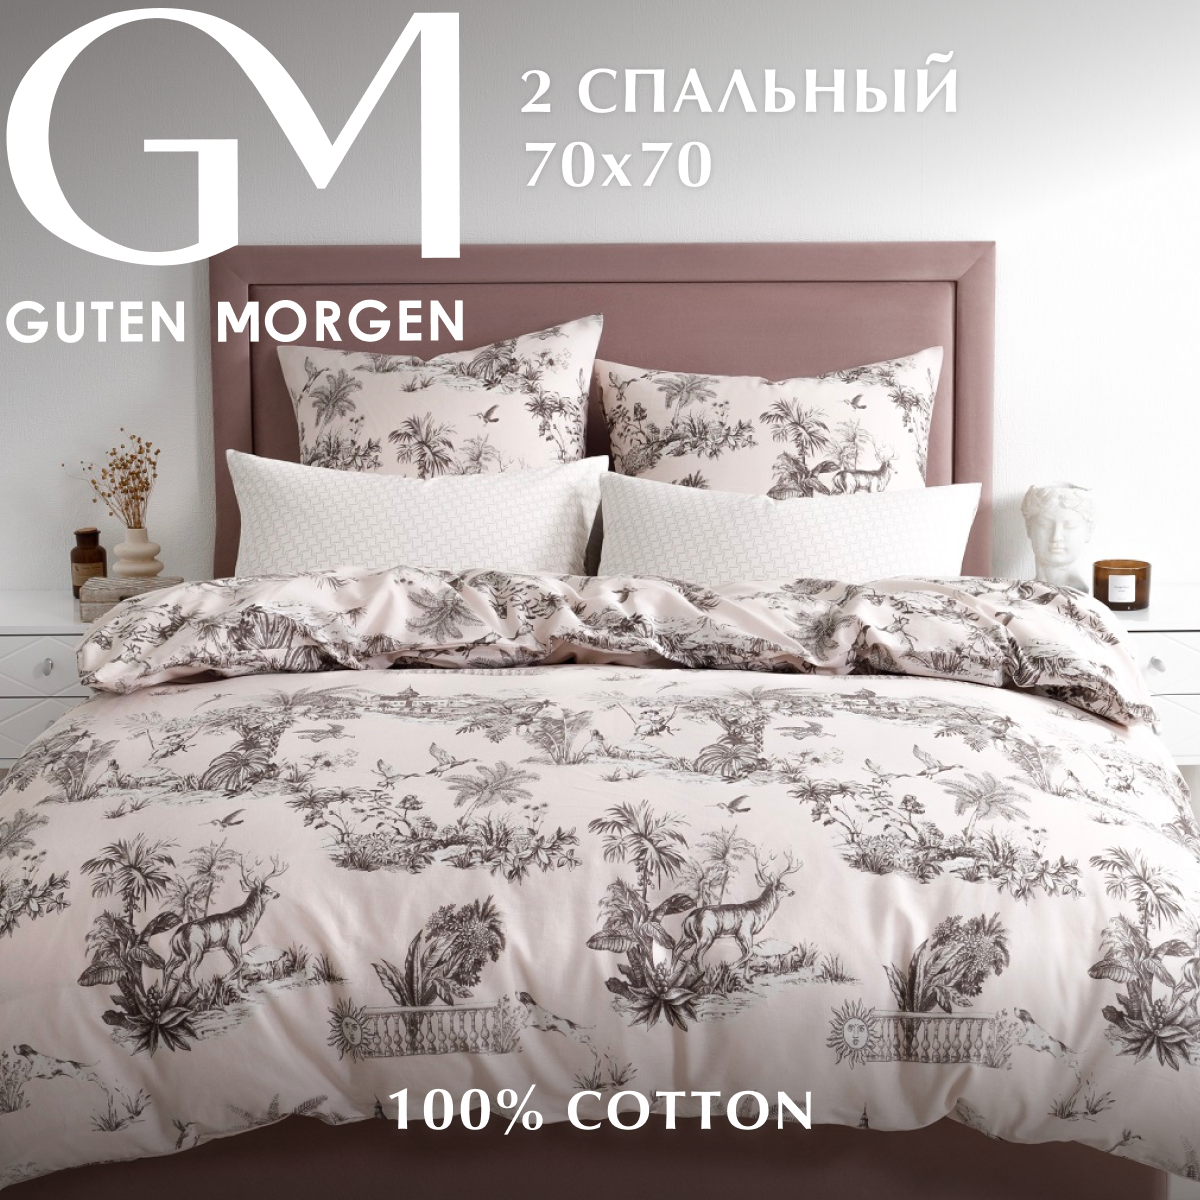 Комплект постельного белья, бязь, 2 спальный с европростыней нав. 70х70, , Guten Morgen, розовый